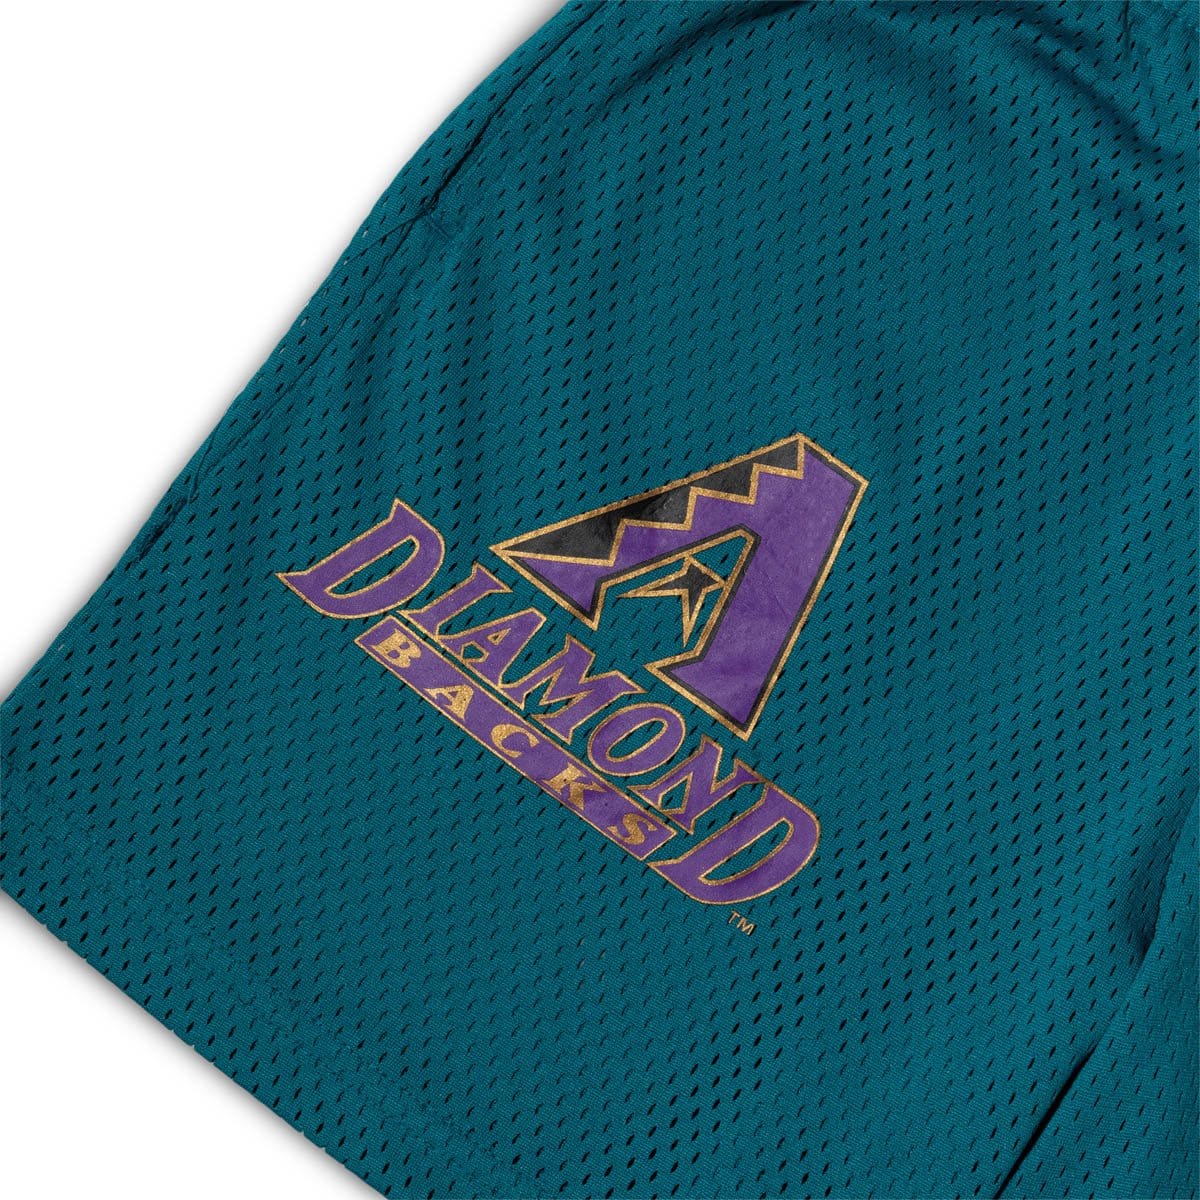 Arizona Diamondbacks on X: Purple & Teal  / X